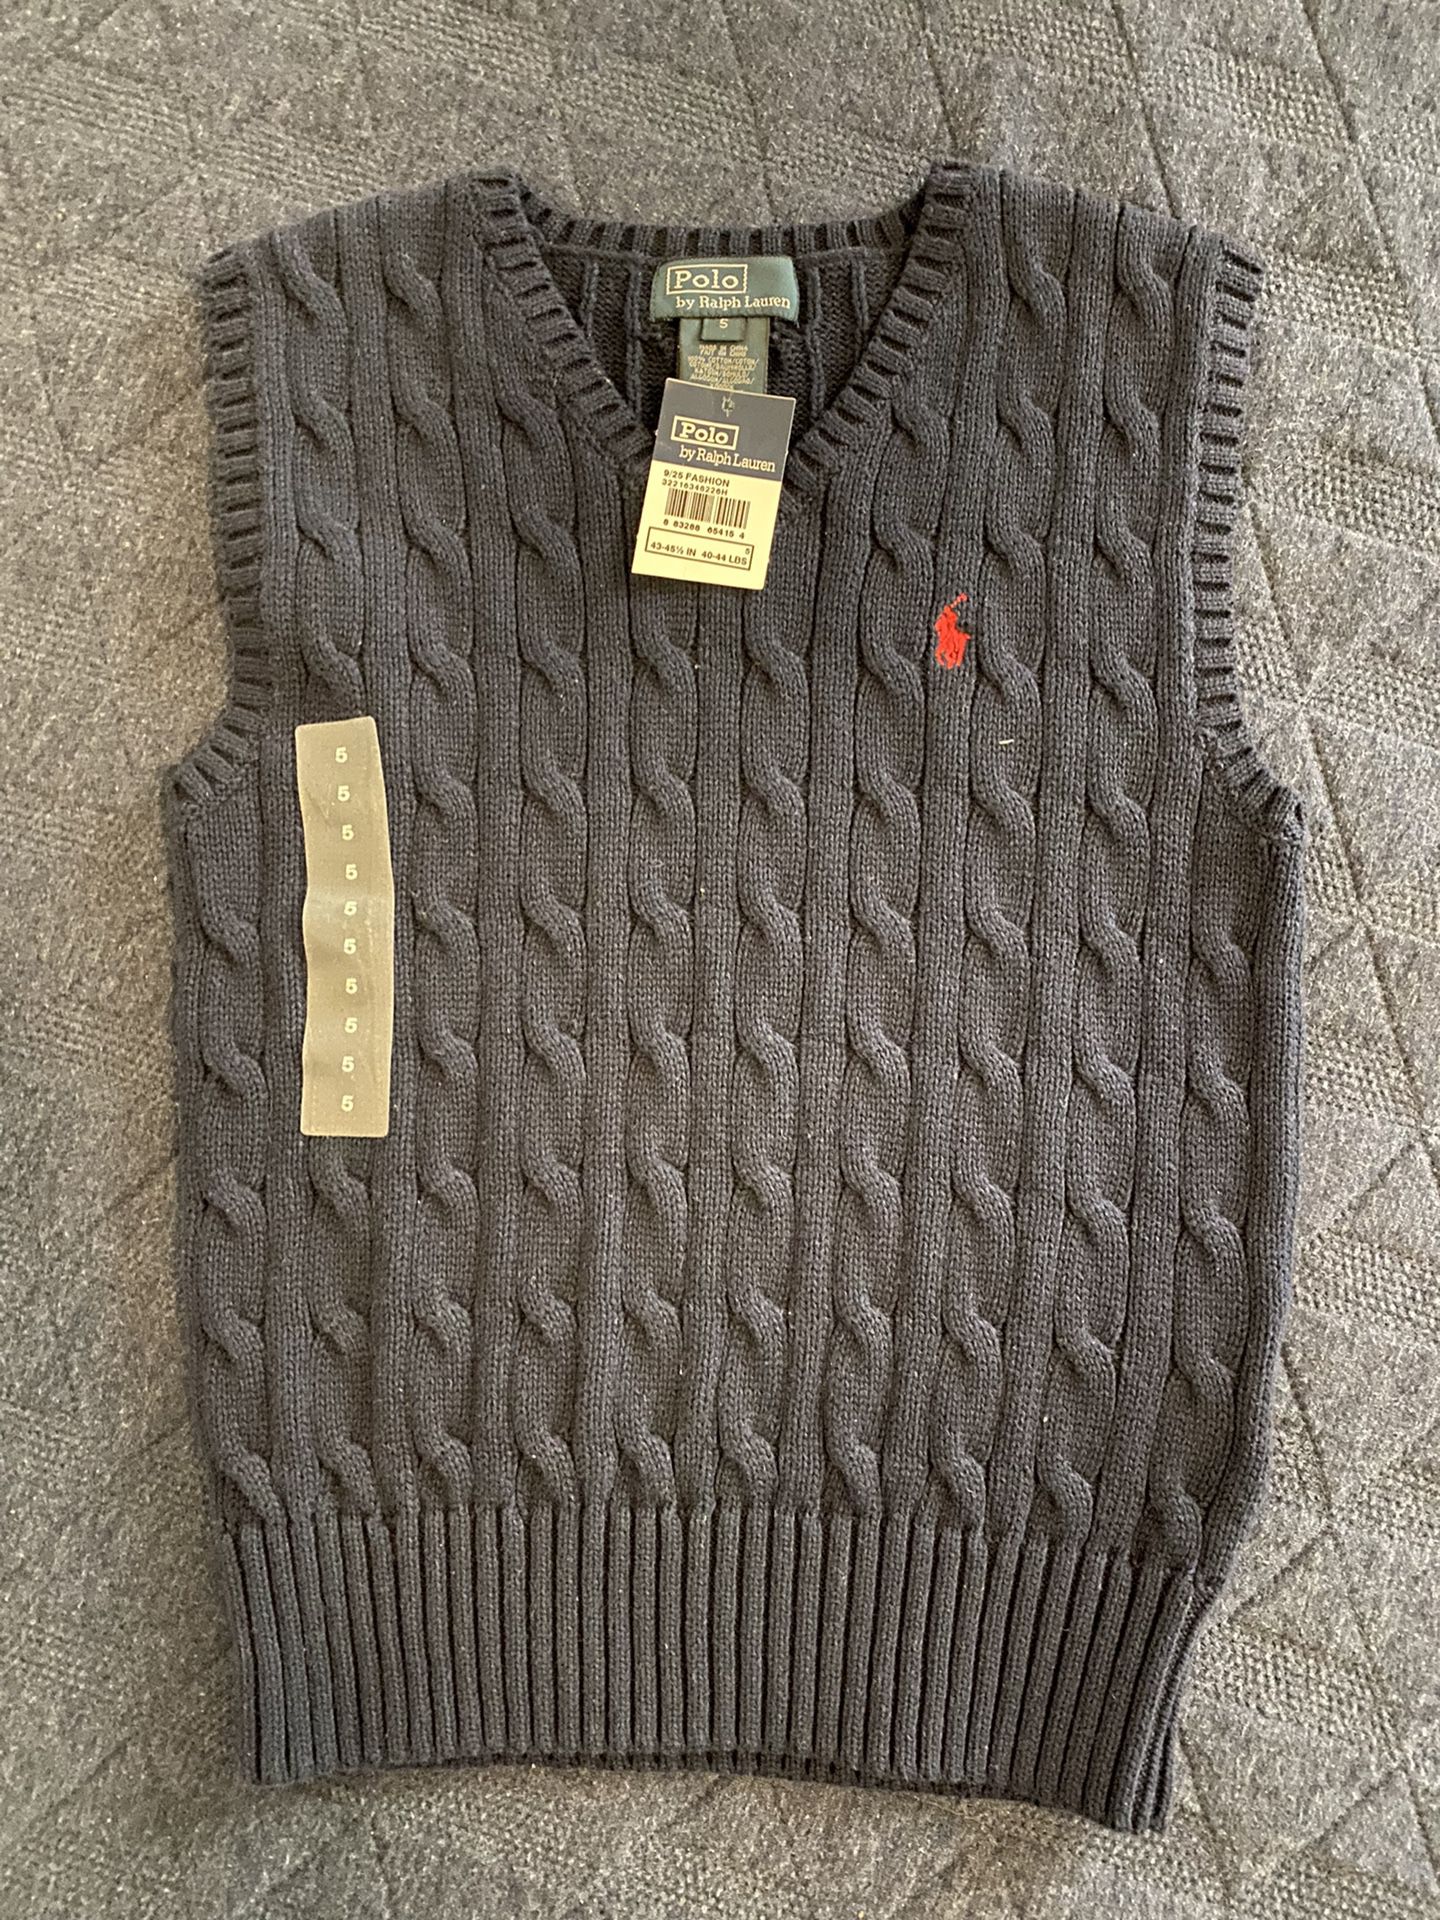 Ralph Lauren Knit Sweater Vest - 5T